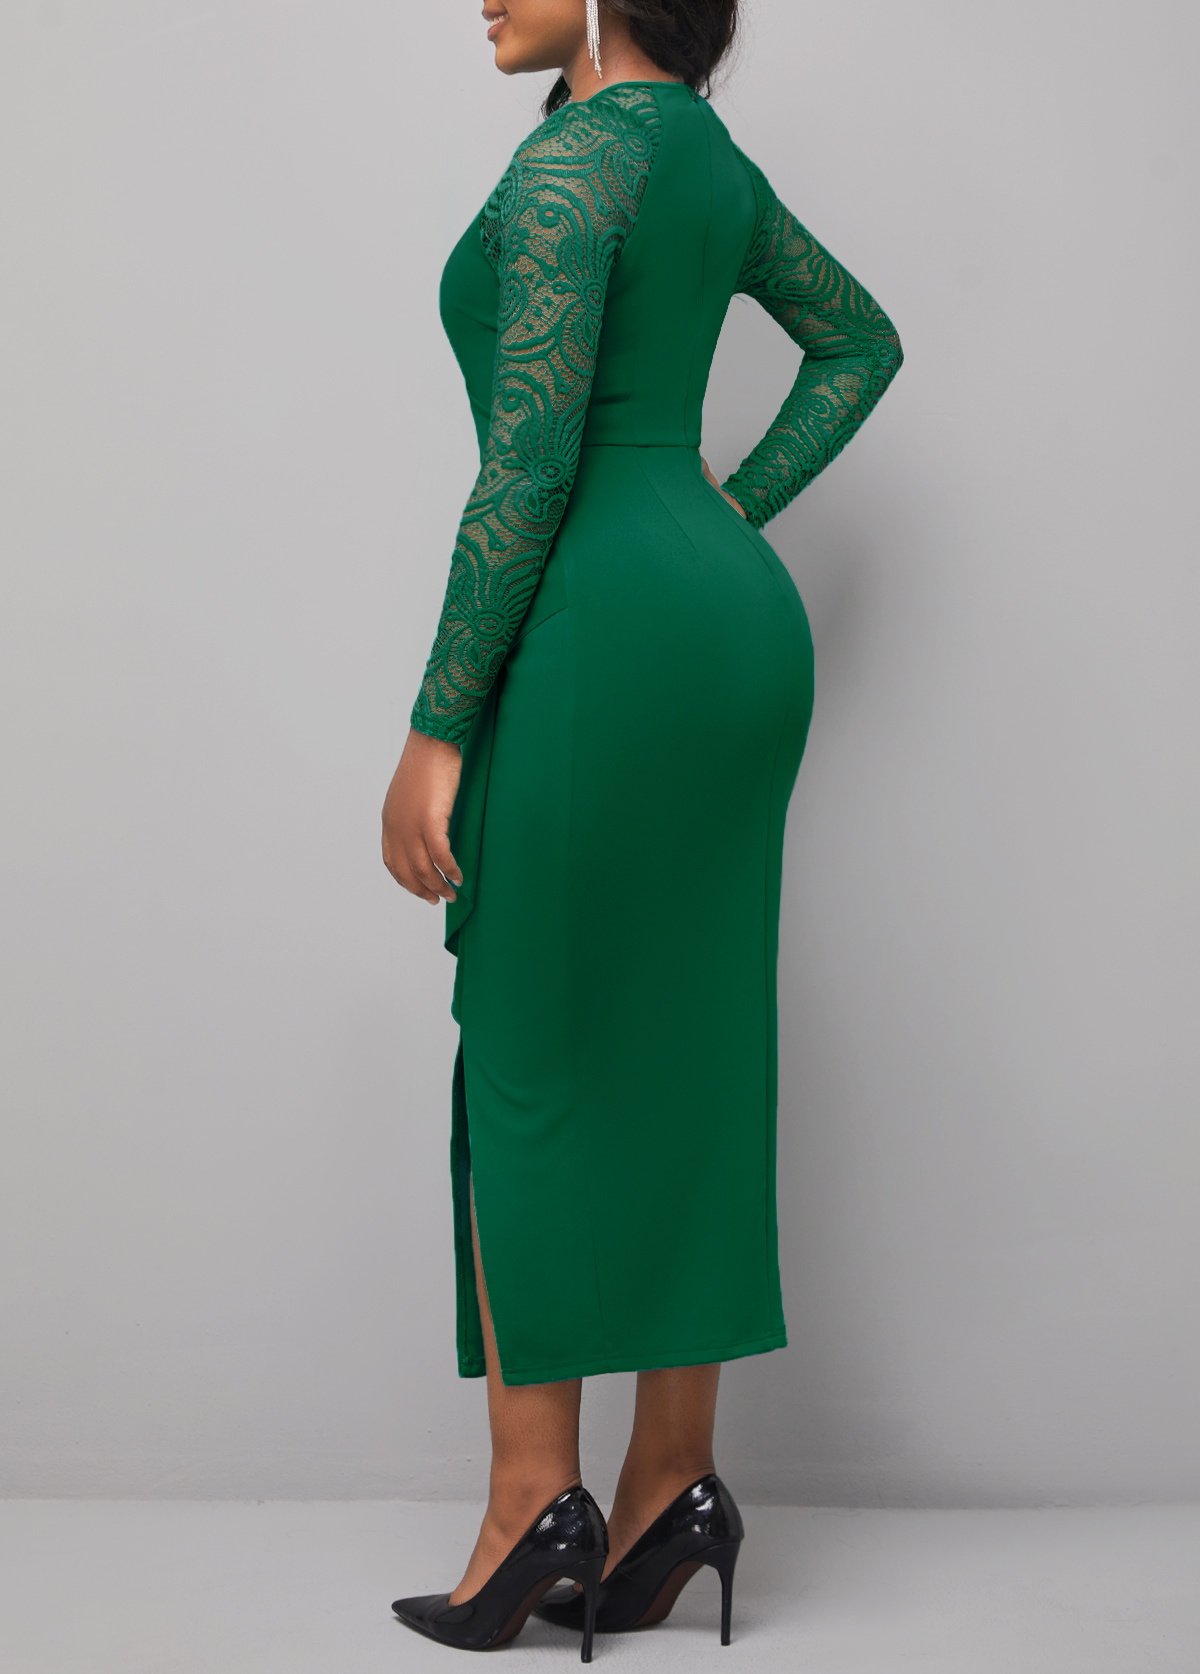 Flounce Cutout Detail Lace Stitching Green Dress